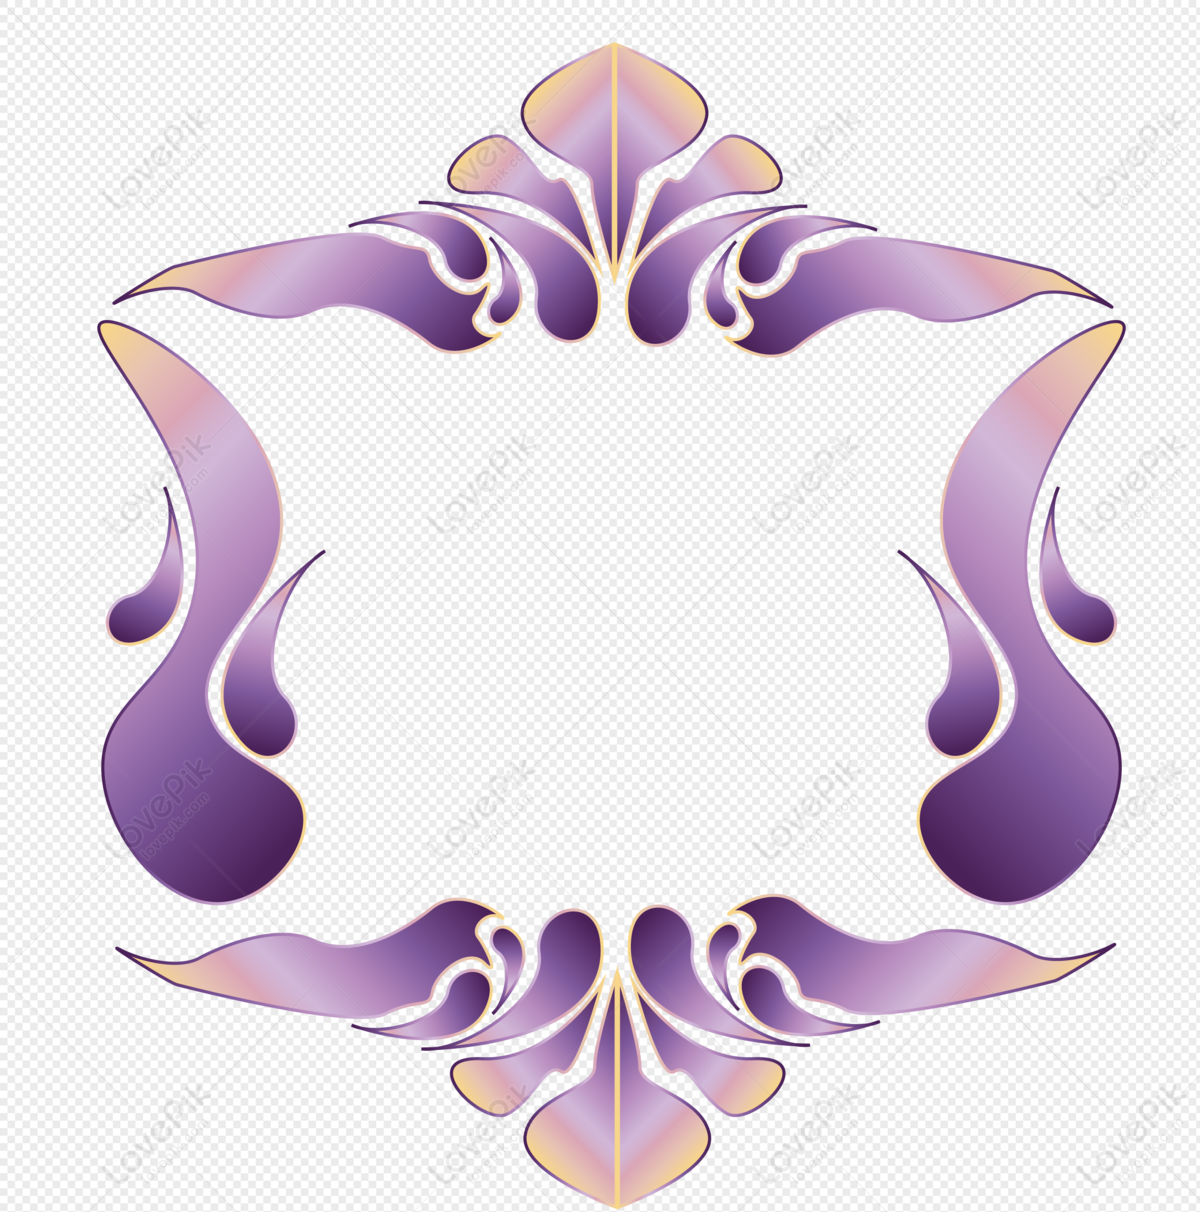 purple and gold border design